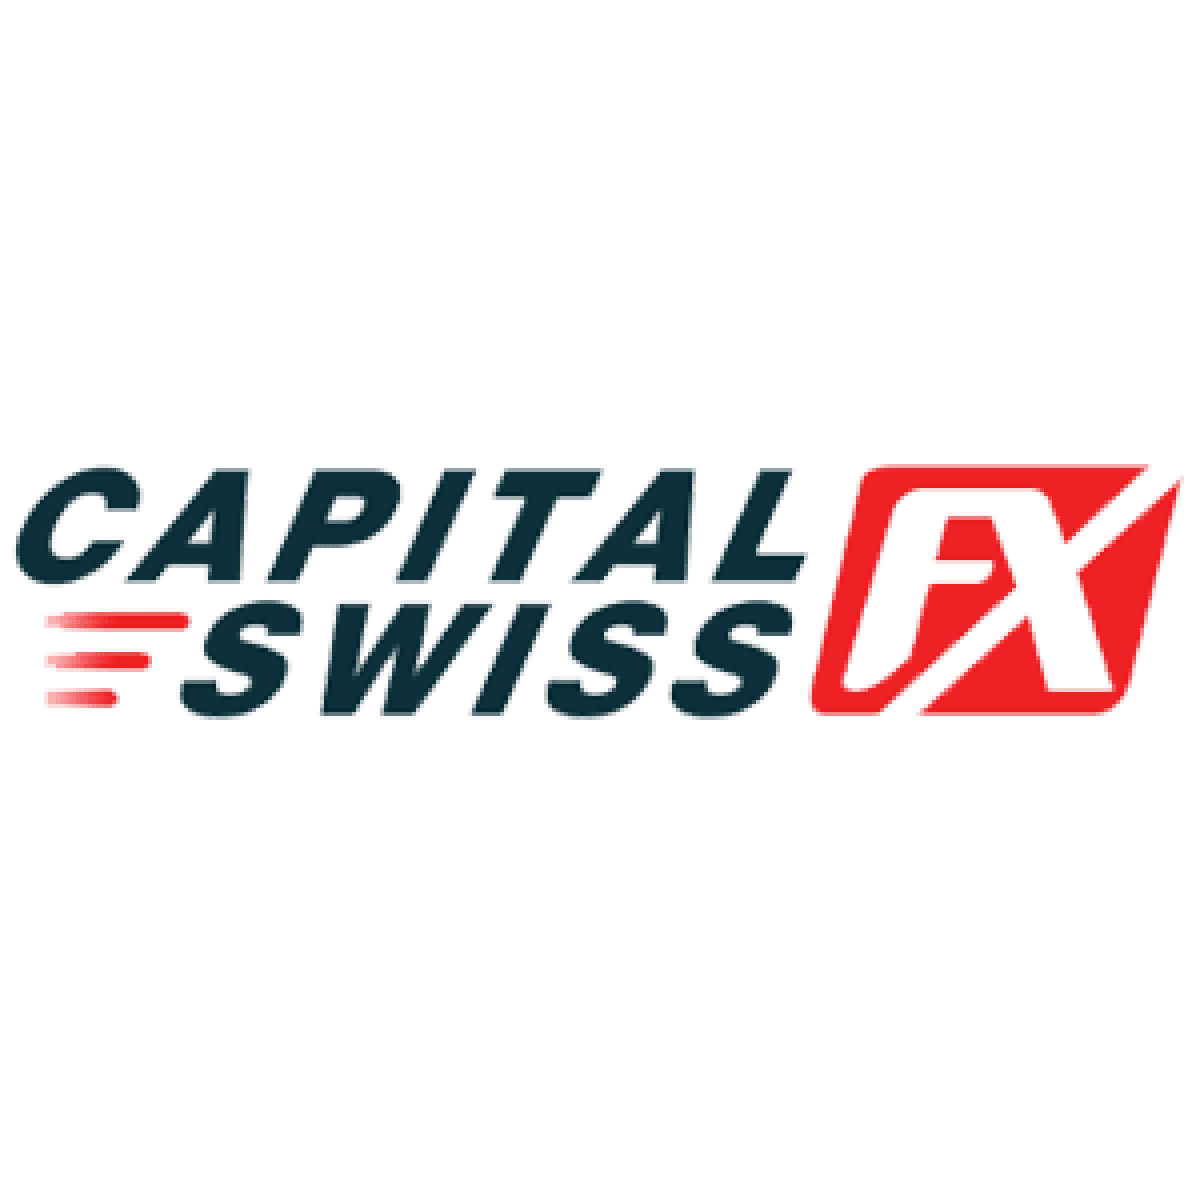 Capital Swiss FX